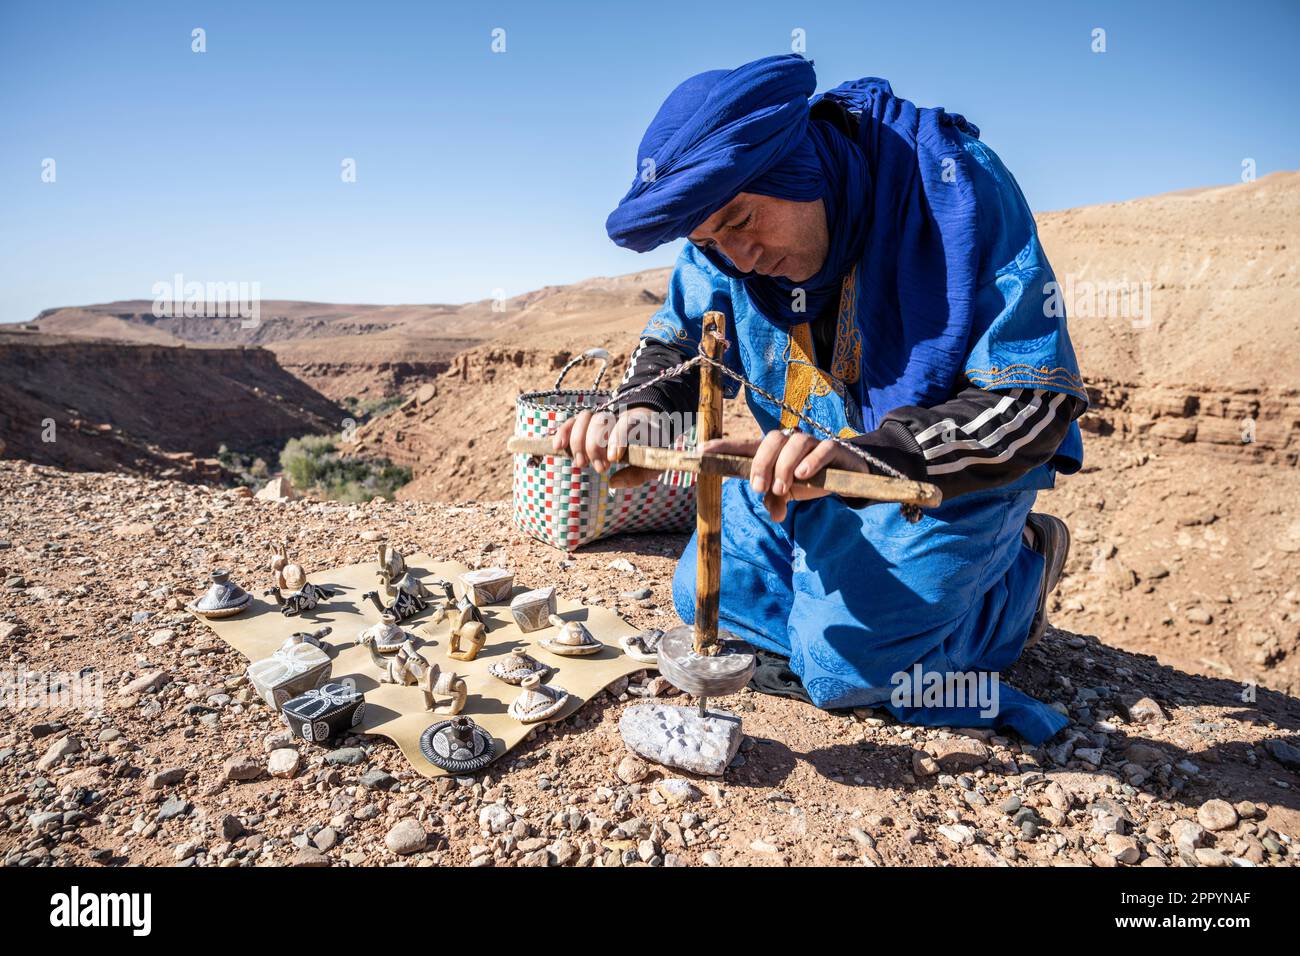 Artigiano vestito in tipico abito berbero lavorando la pietra con un trapano manuale. Foto Stock